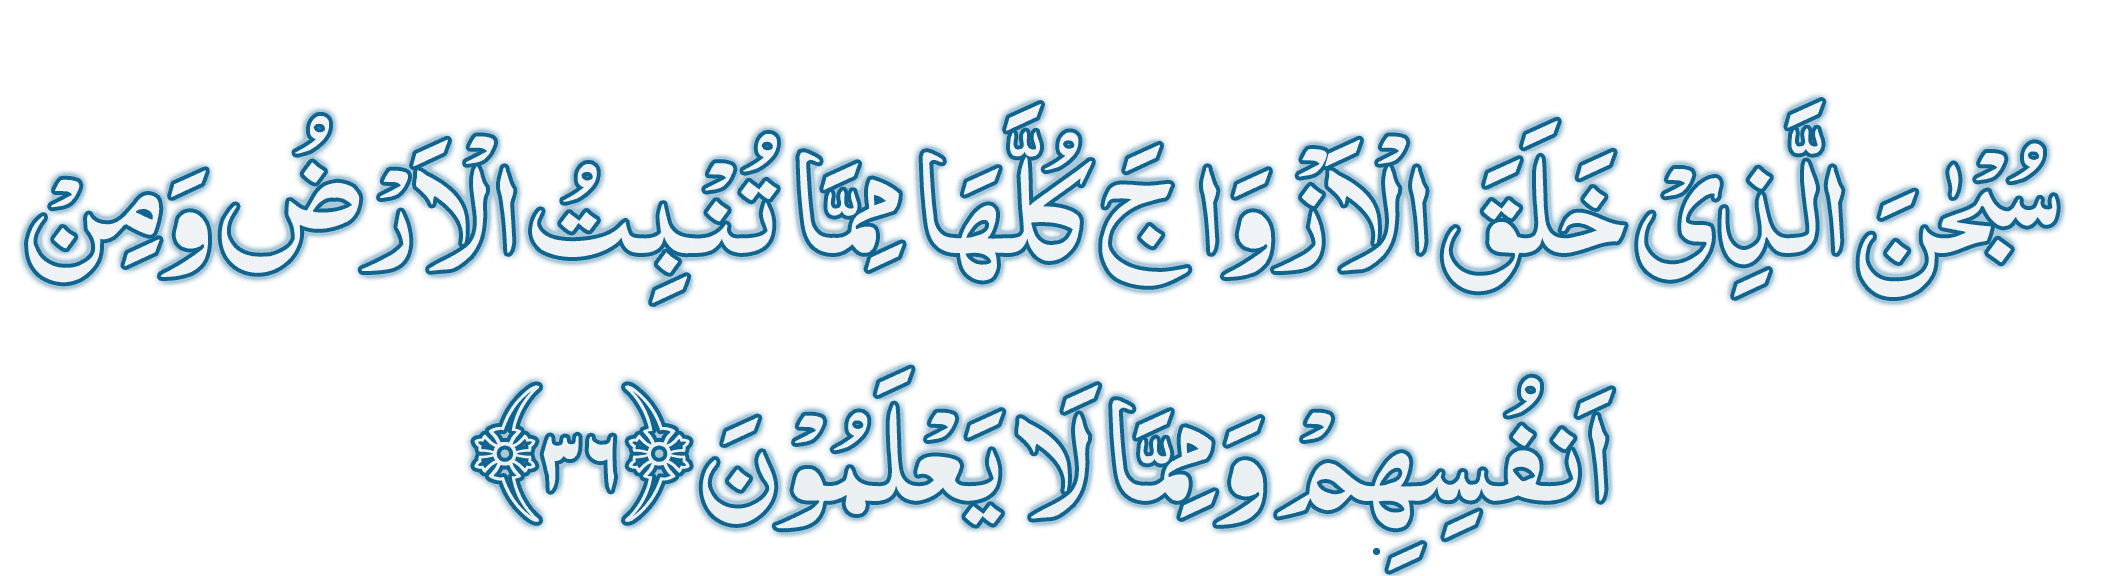 Surah Yaseen Ayat 36 arabi